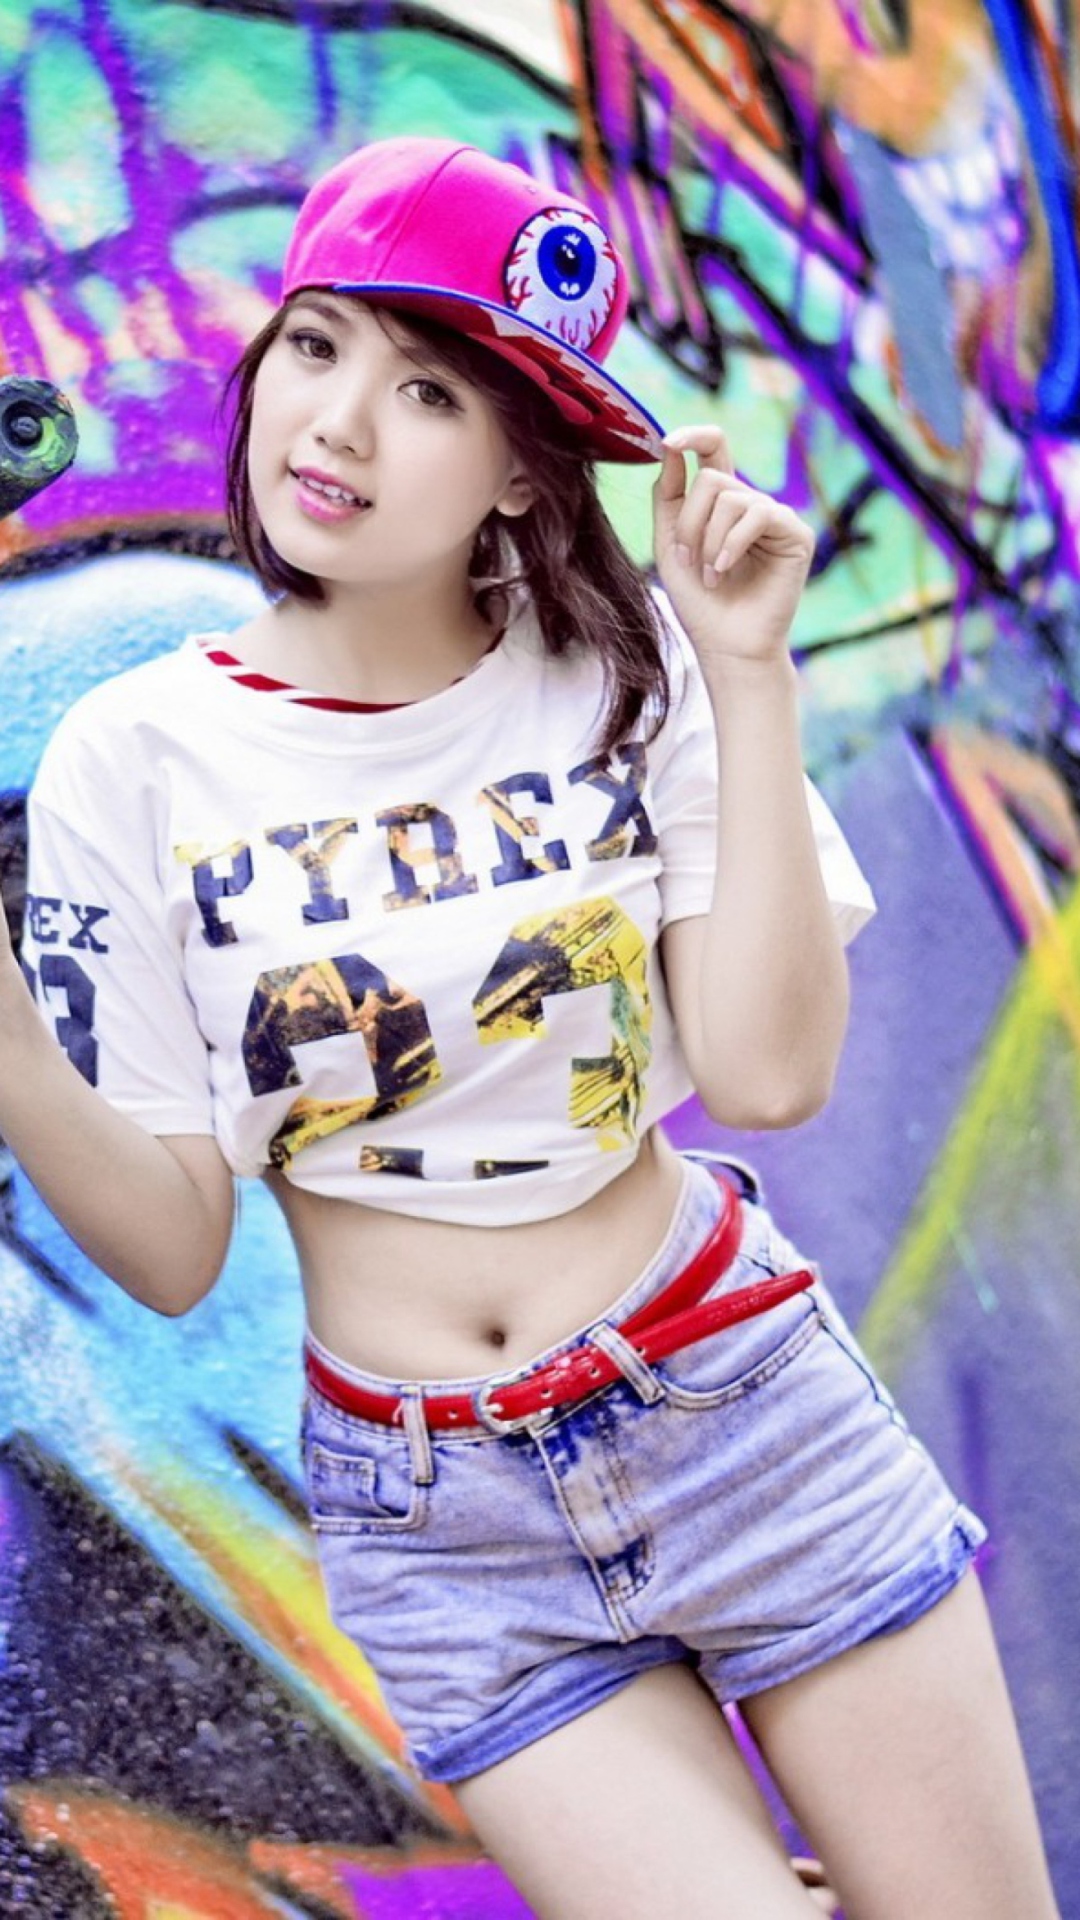 Обои Cute Asian Graffiti Artist Girl 1080x1920